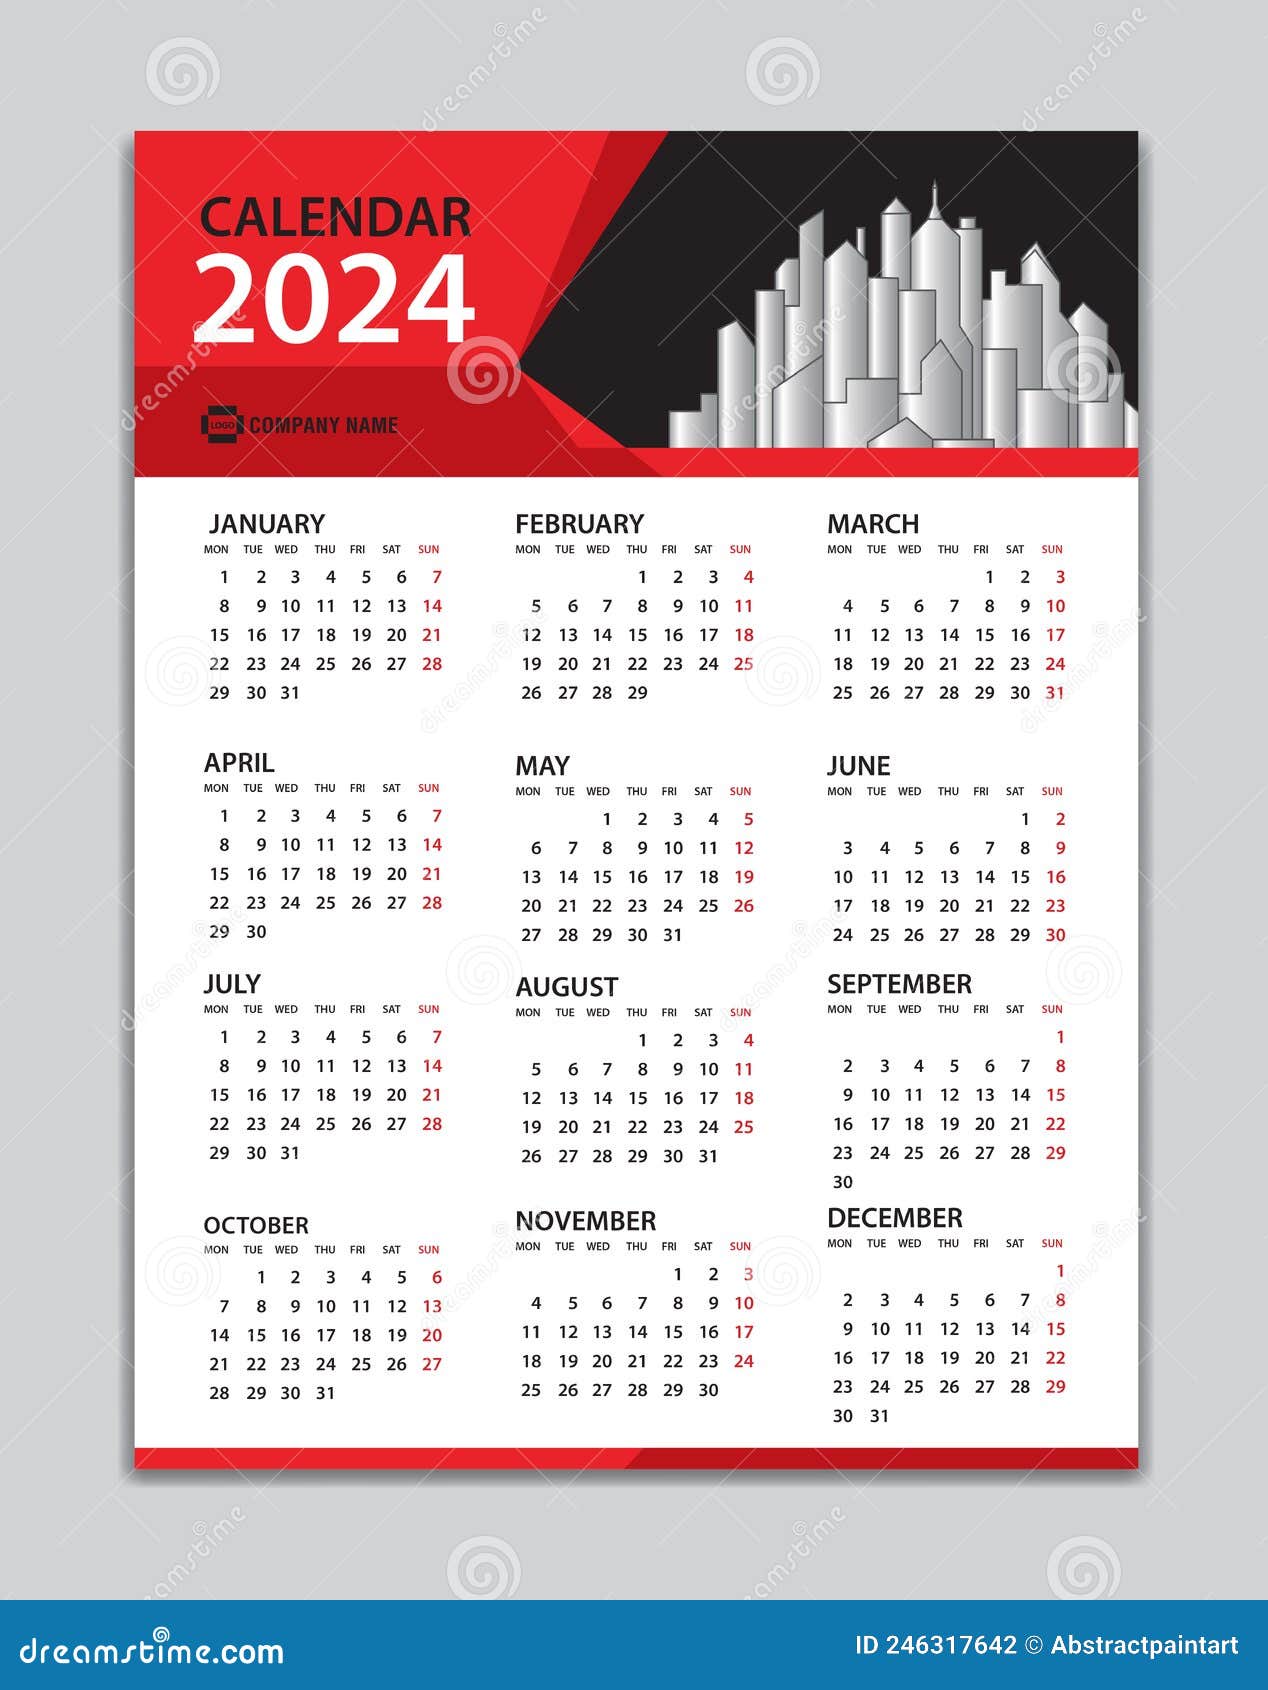 Calendar 2024 Template, Wall Calendar 2024 Year, Desk Calendar 2024